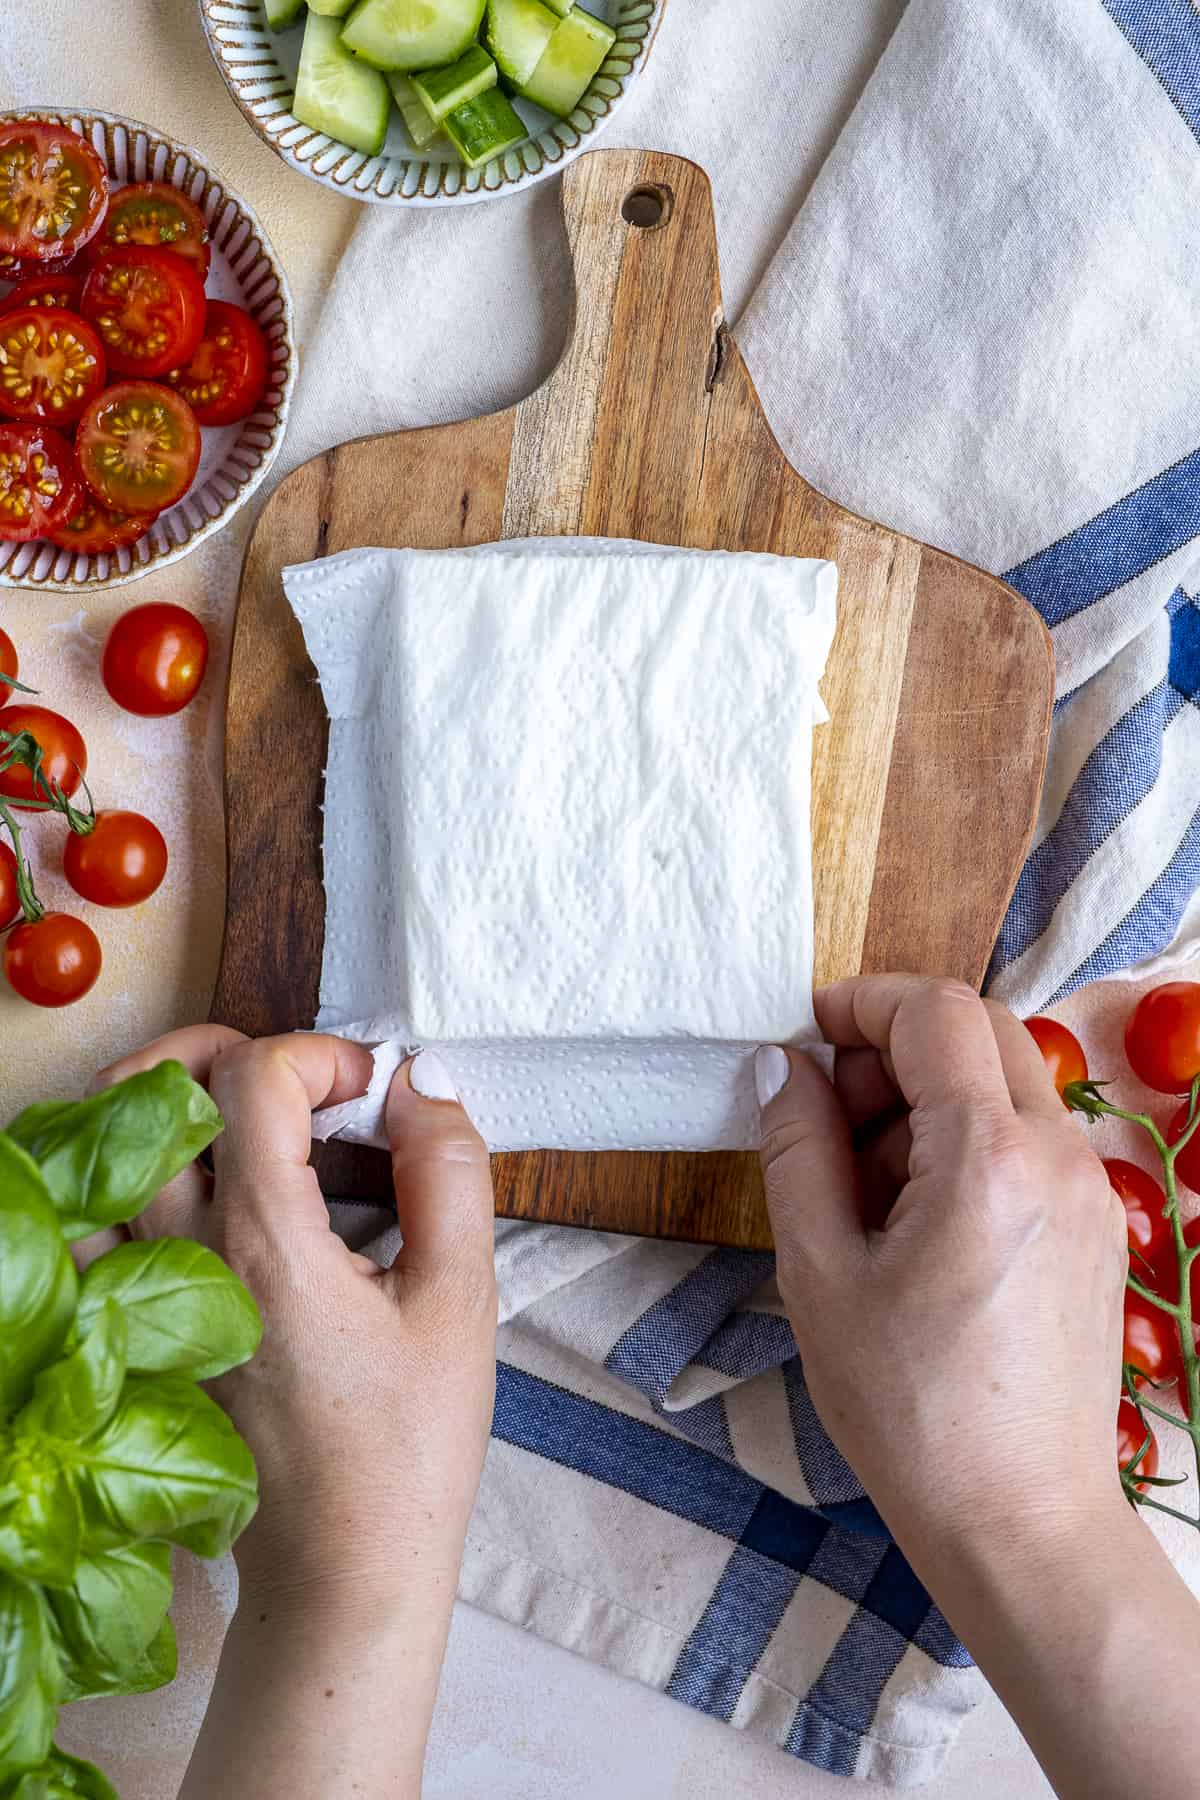 用湿纸巾包裹一块菲达奶酪。番茄切片，黄瓜和新鲜罗勒放在旁边。